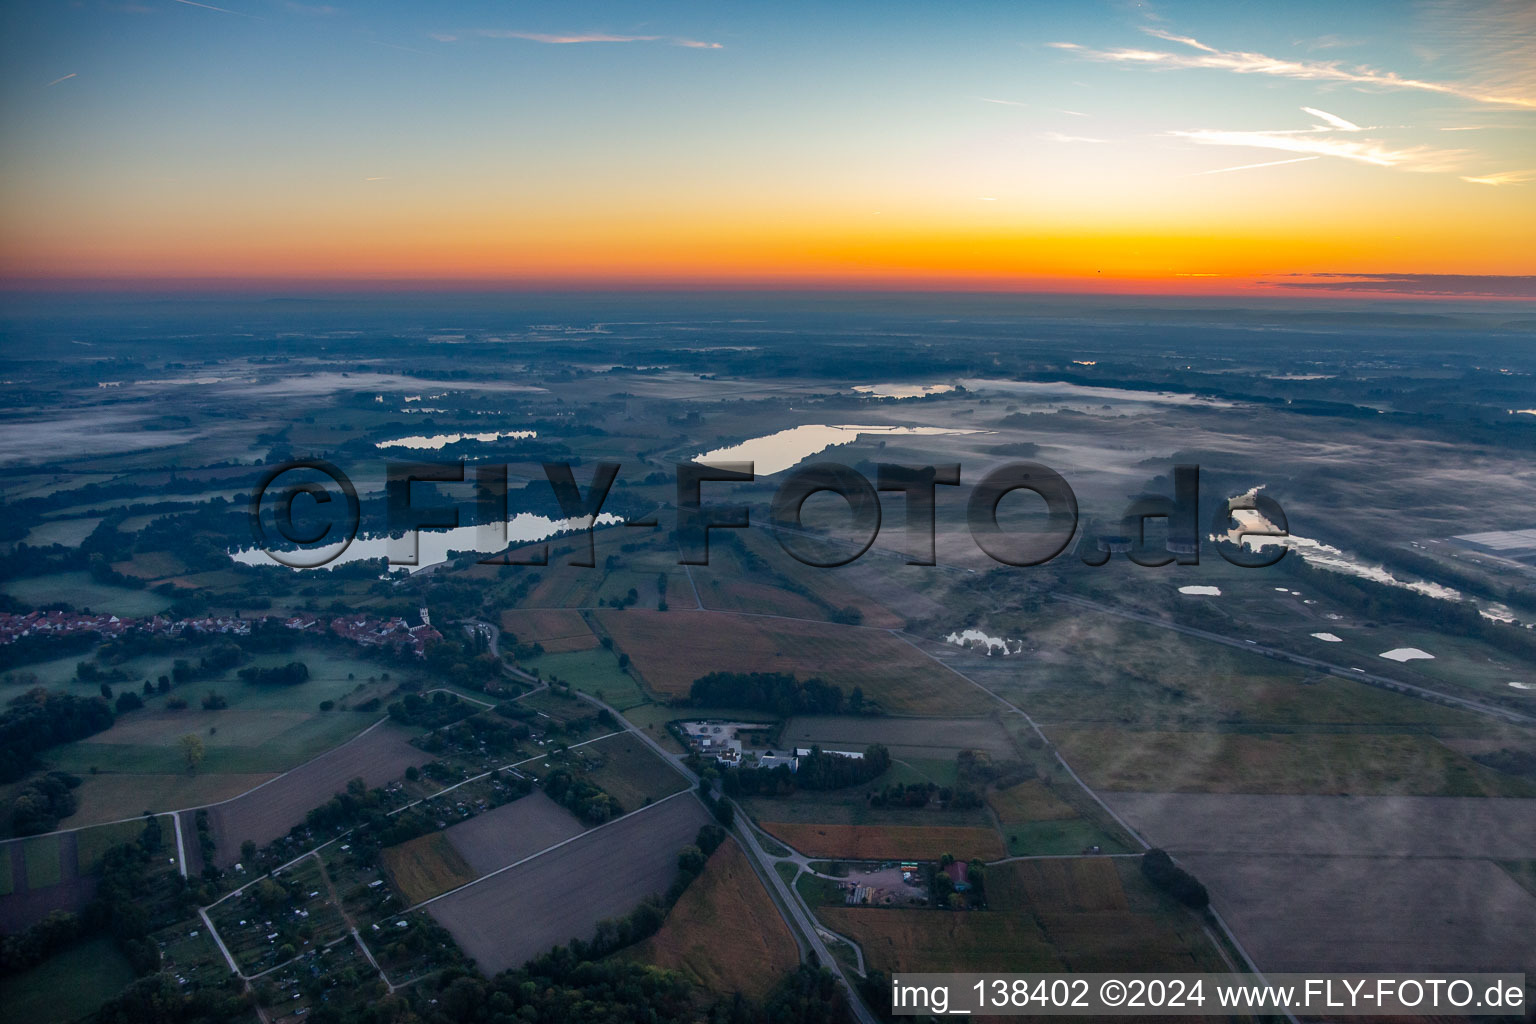 Vue aérienne de Lacs de carrière et Haut-Rhin avant le lever du soleil à Jockgrim dans le département Rhénanie-Palatinat, Allemagne